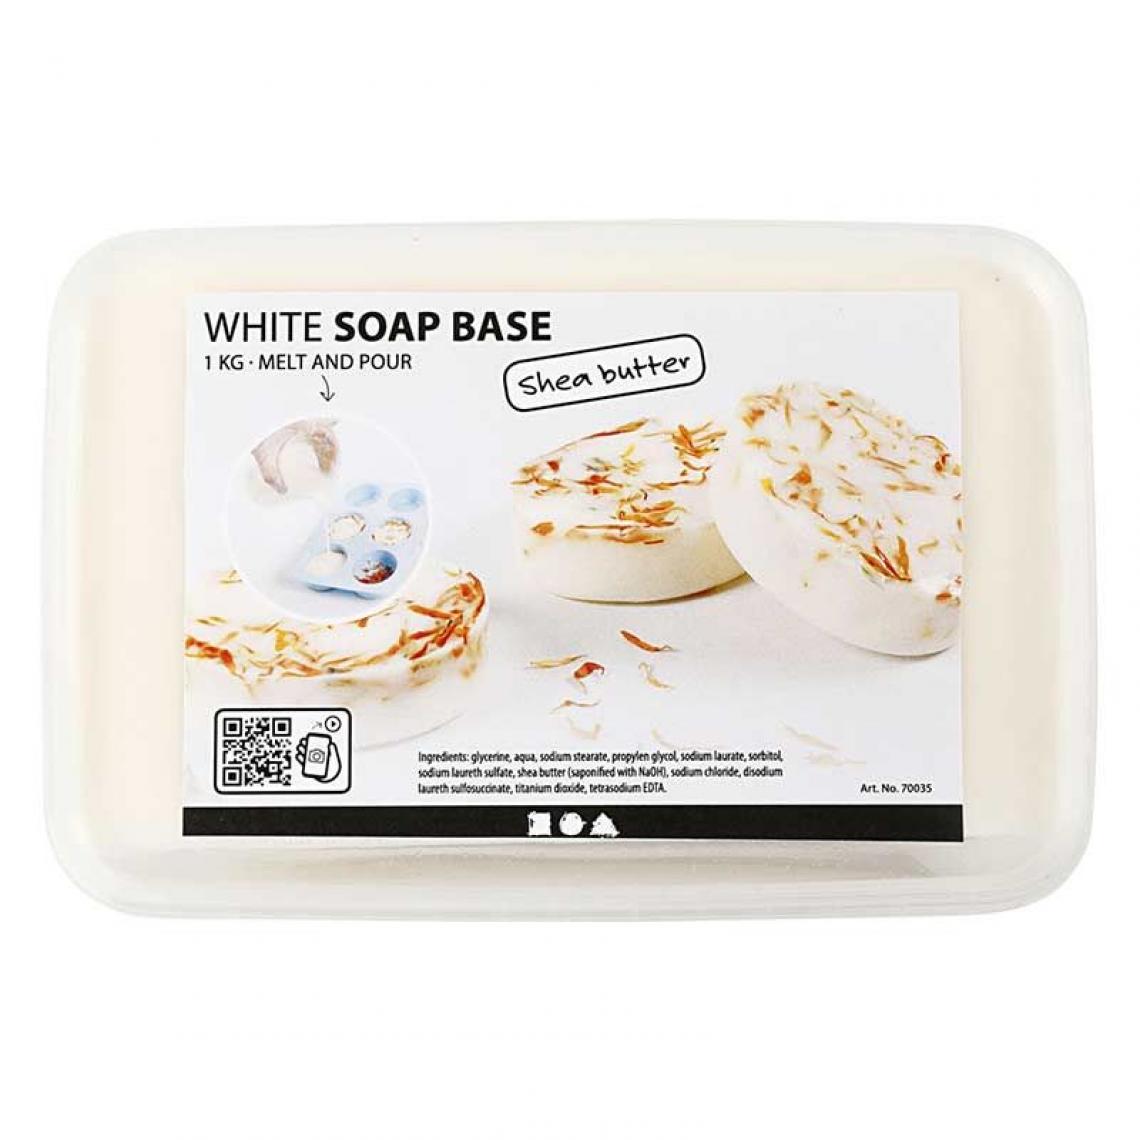 Creotime - Base de savon au beurre de karité 1 kg - Dessin et peinture